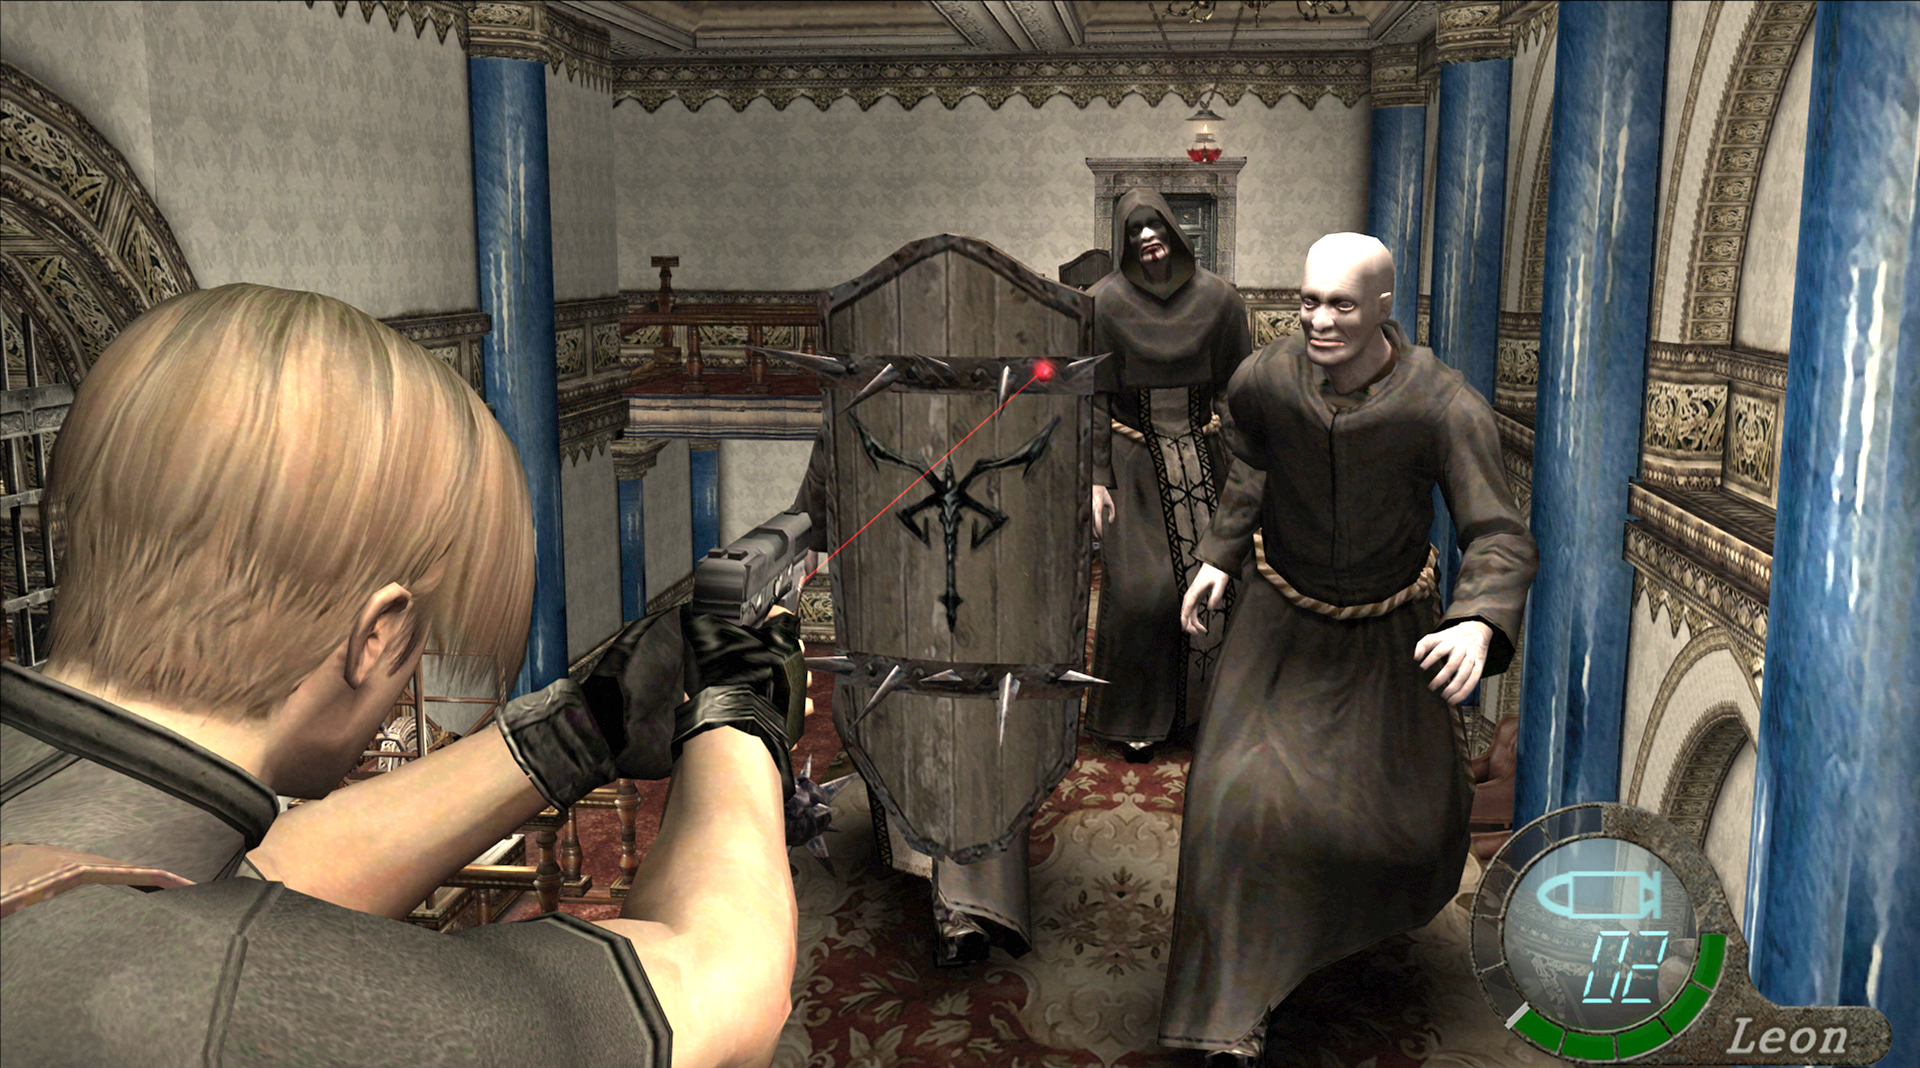 EvilSpecial  Quais seriam os 10 inimigos comuns mais difíceis de Resident  Evil 4 Remake? - EvilHazard